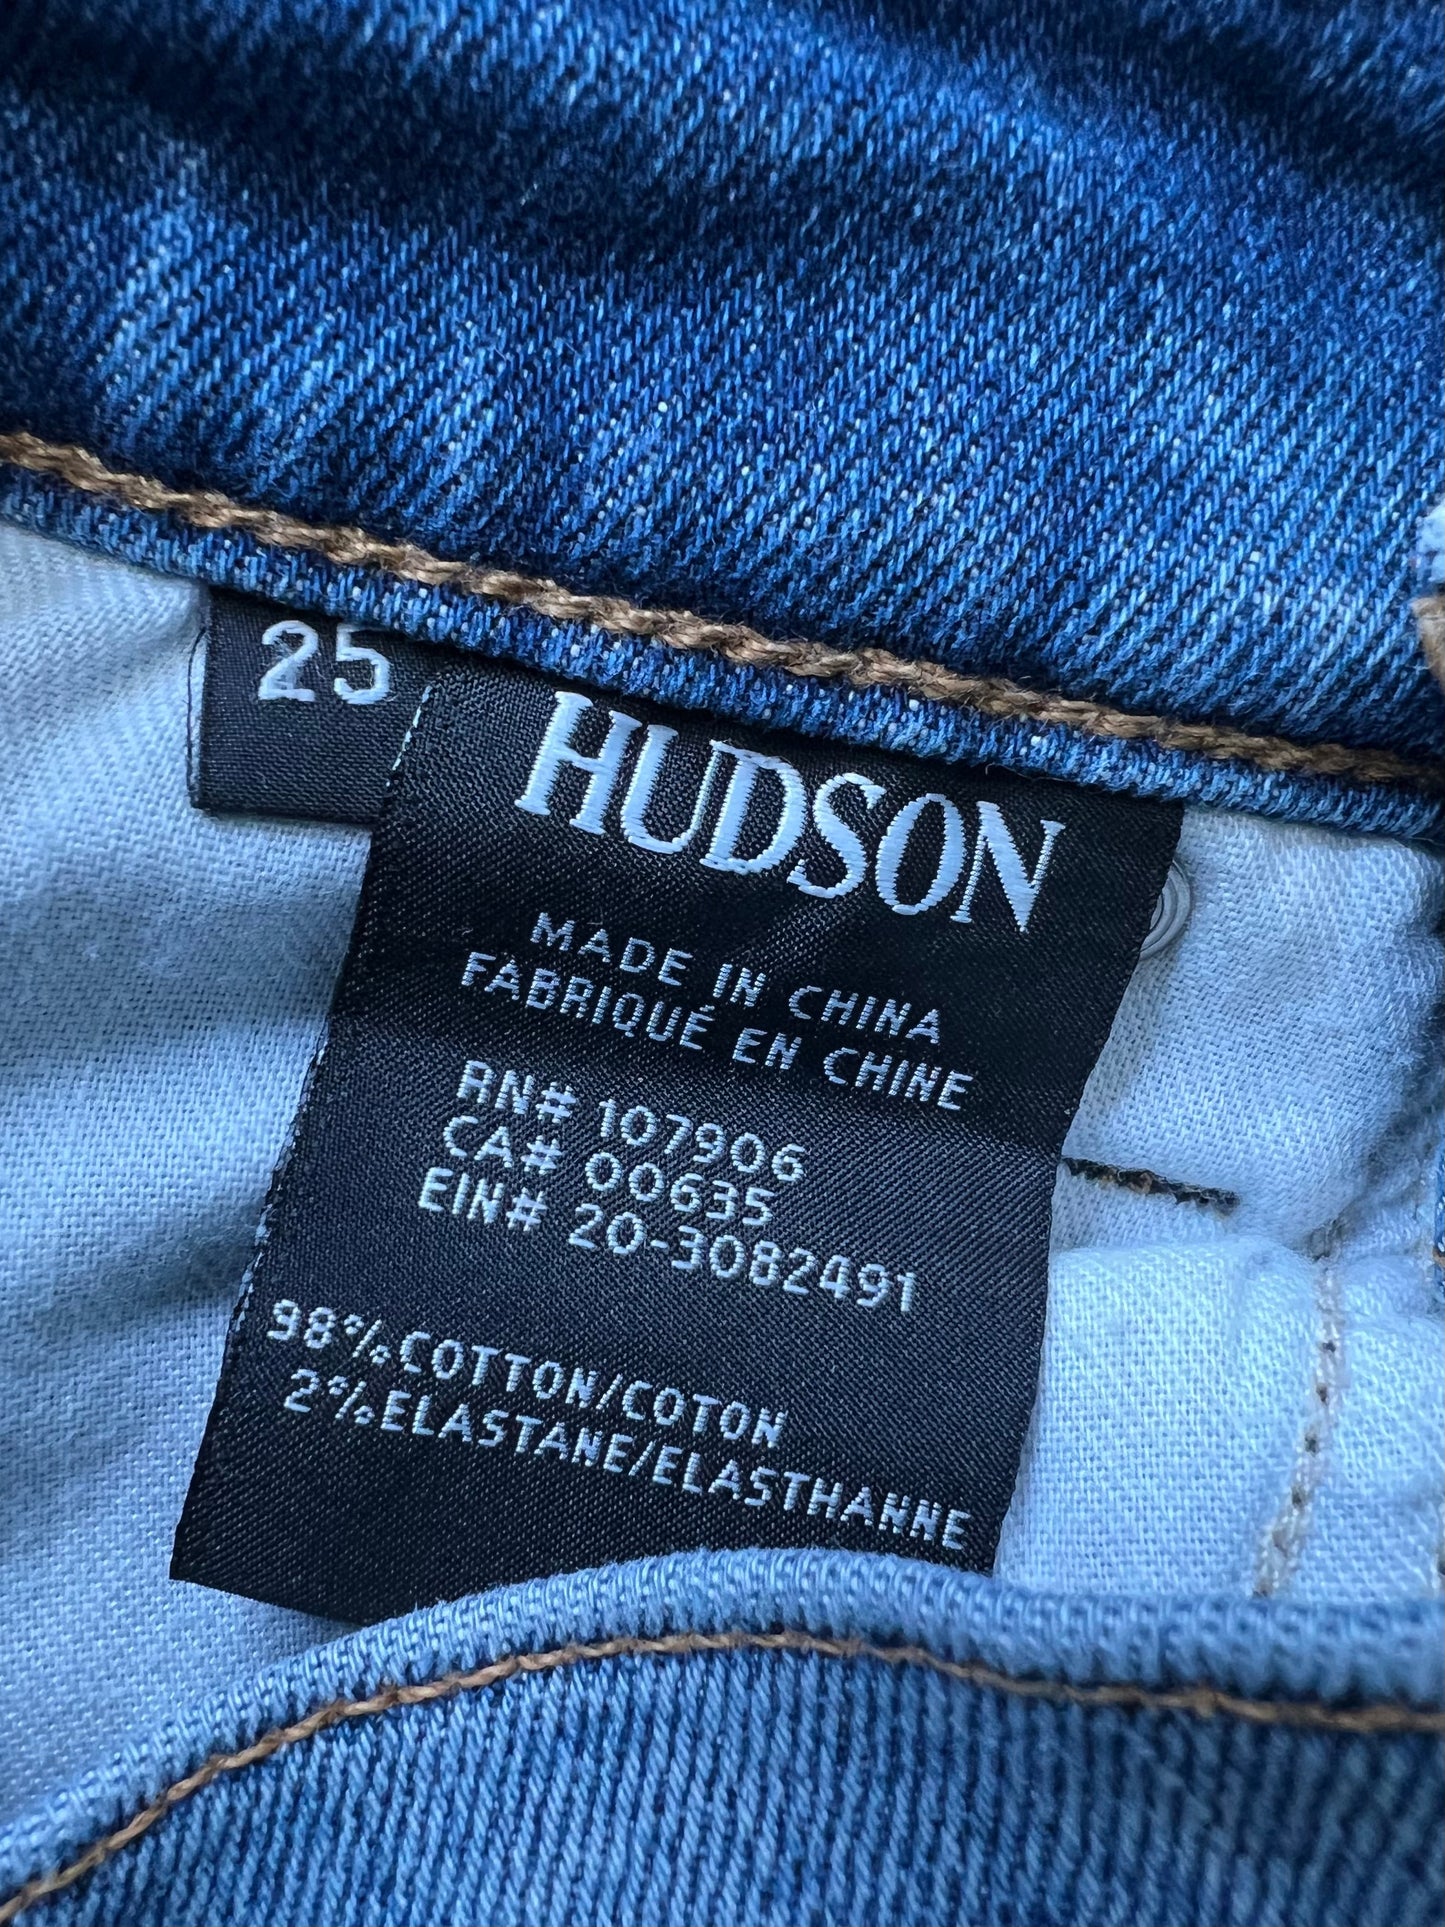 Blue Jeans Designer Hudson, Size 0